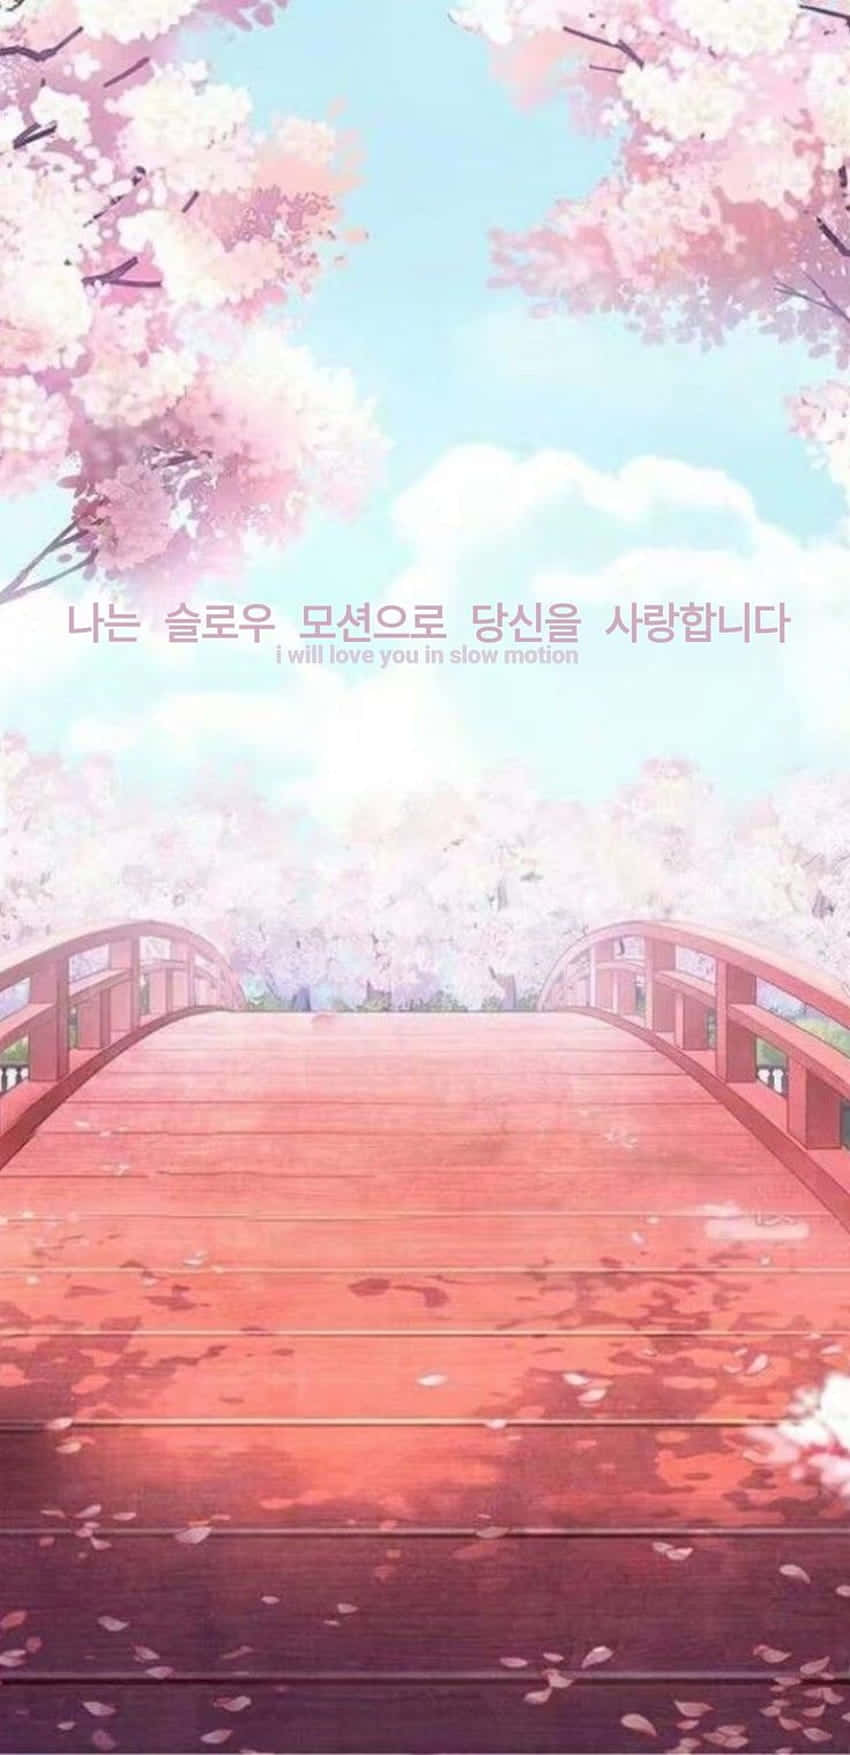 Einebrücke Mit Rosa Blüten Und Eine Brücke Wallpaper